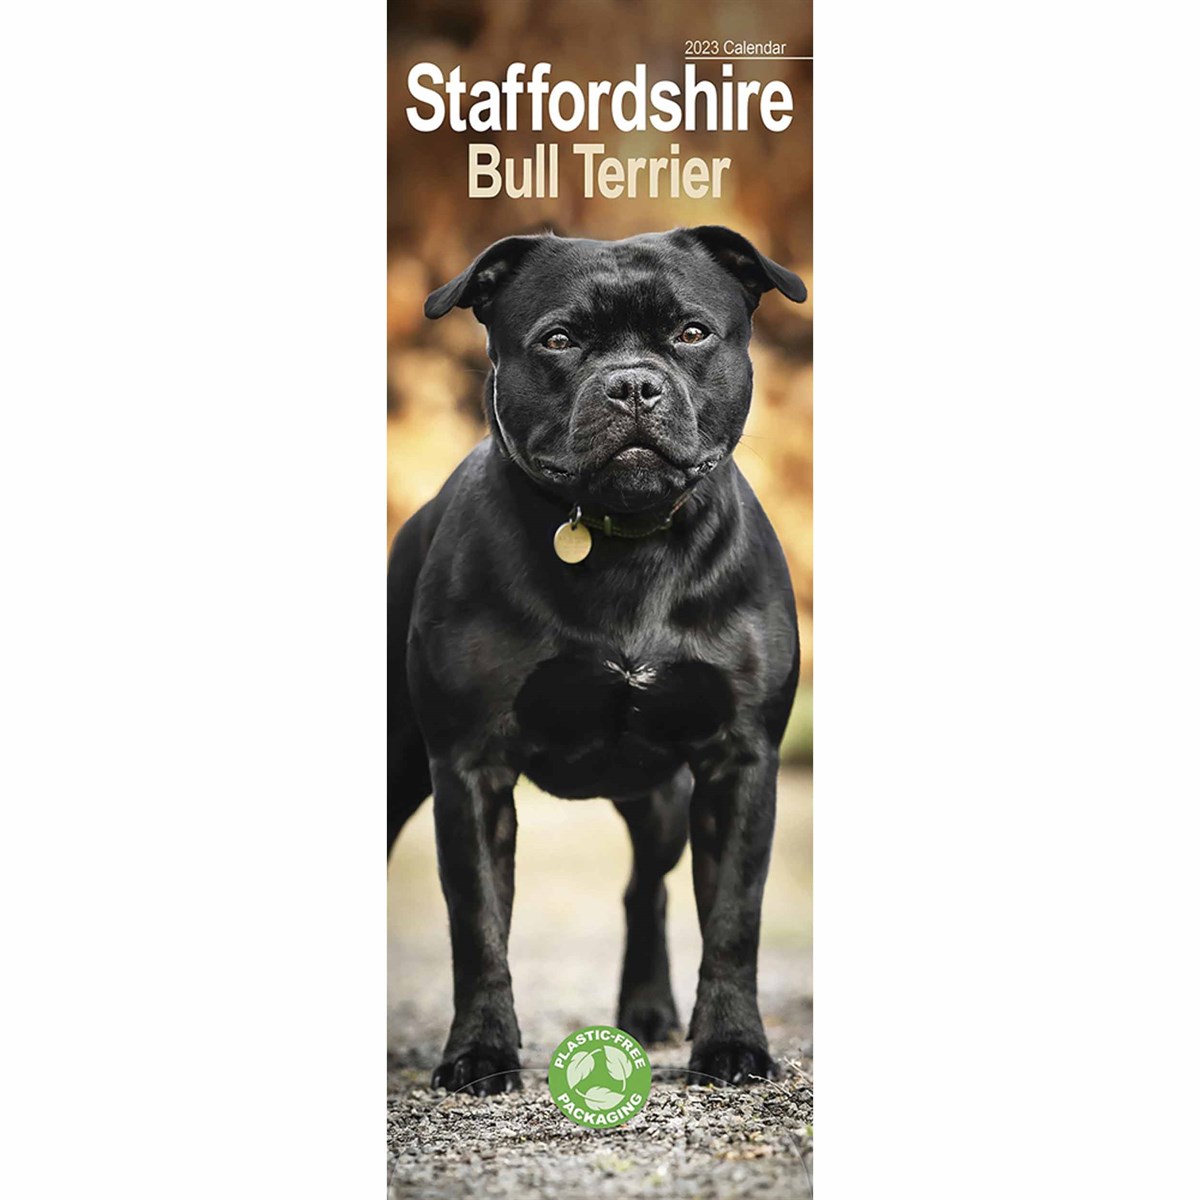 Staffordshire Bull Terrier Slim 2023 Calendars